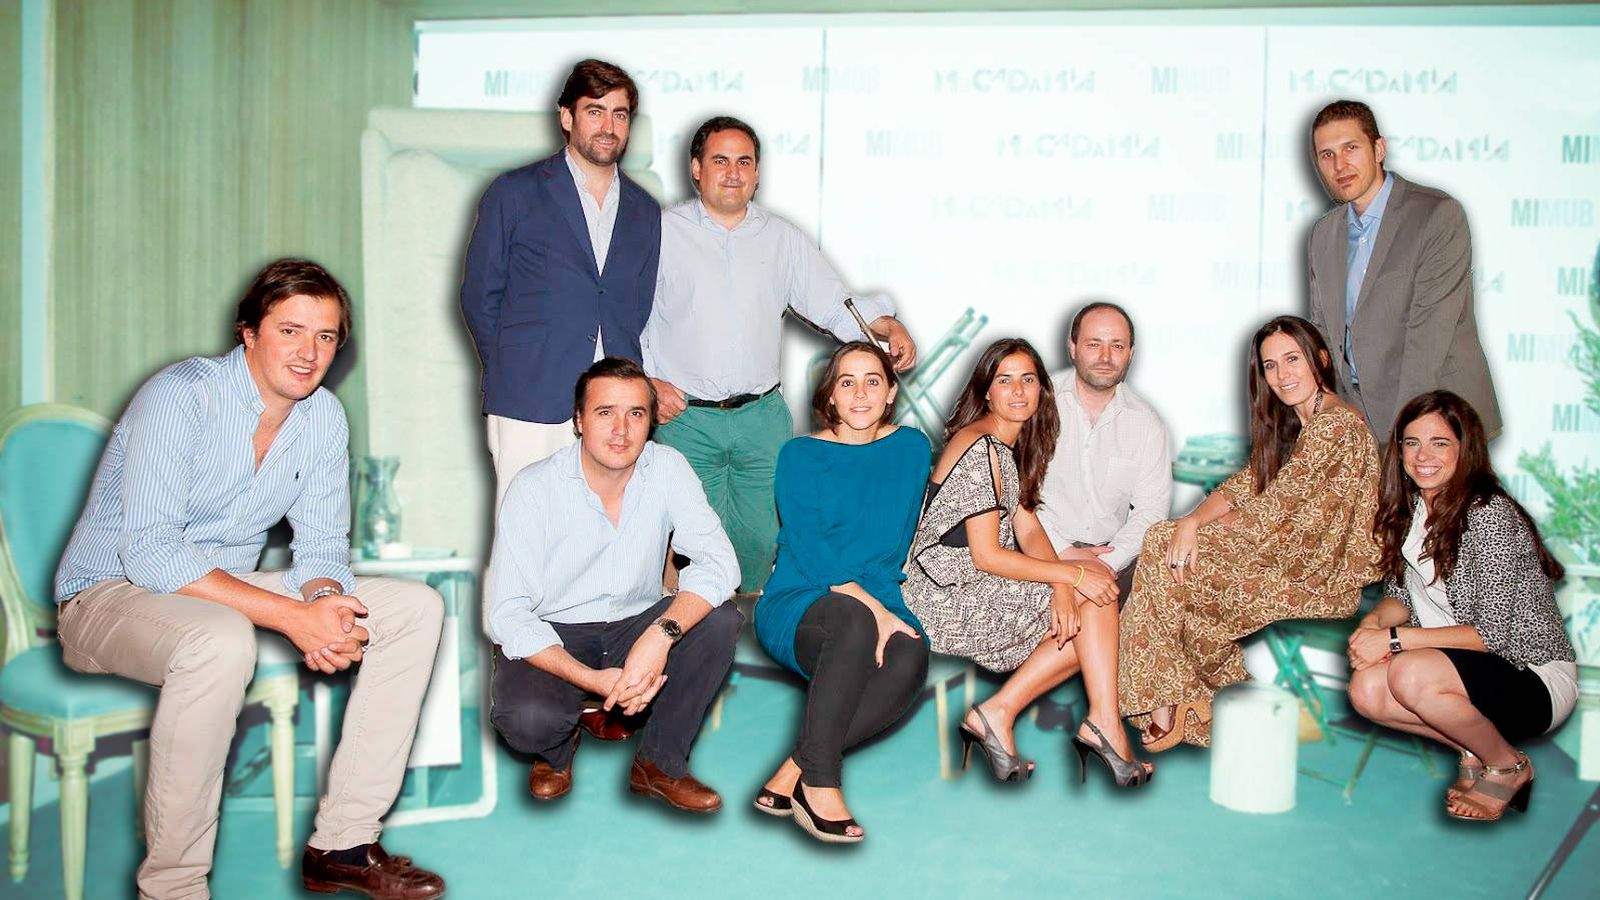 Foto:  Rafa Garrido (pantalones verdes y camisa), CEO de eShop Ventures, junto al equipo de Mimub.